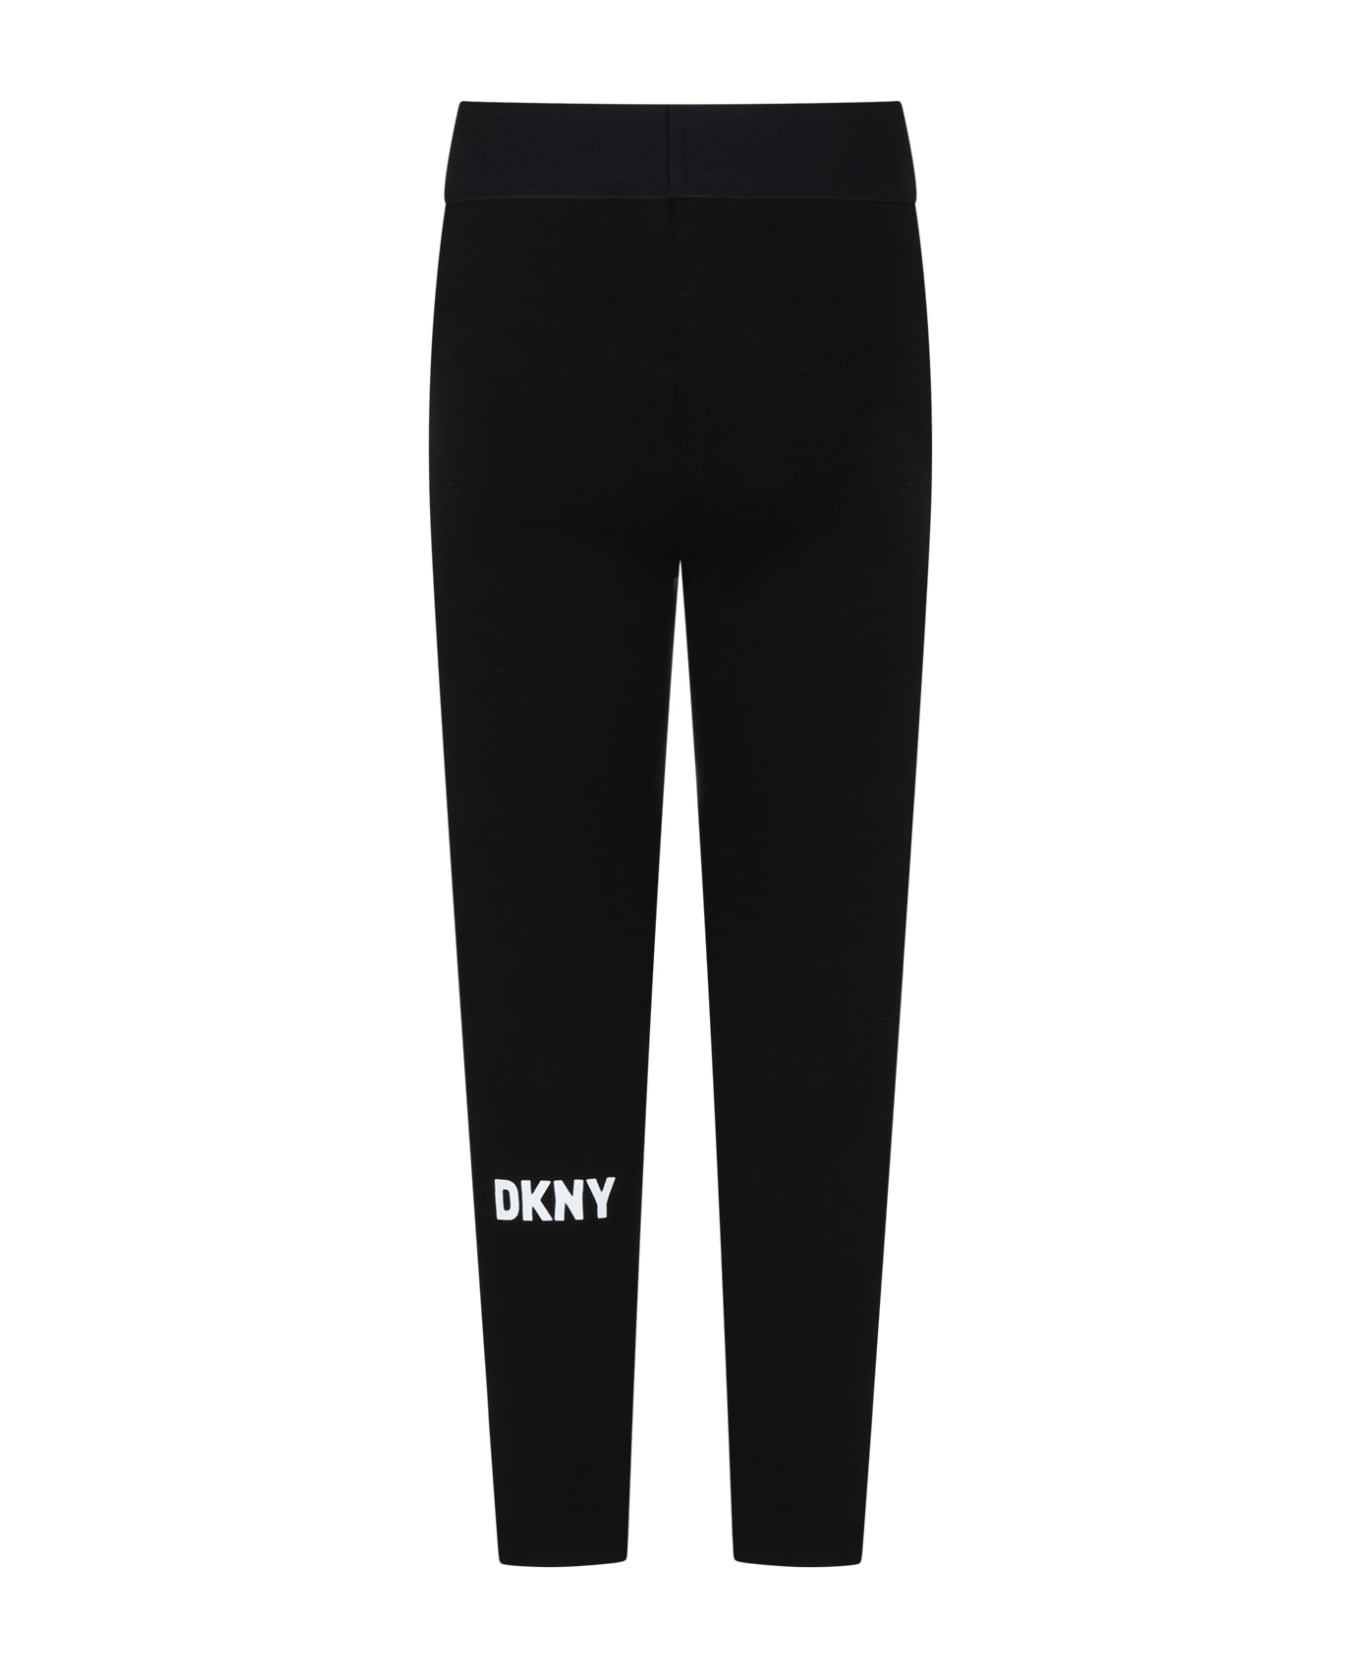 DKNY Black Leggings For Girl With Logo - Black